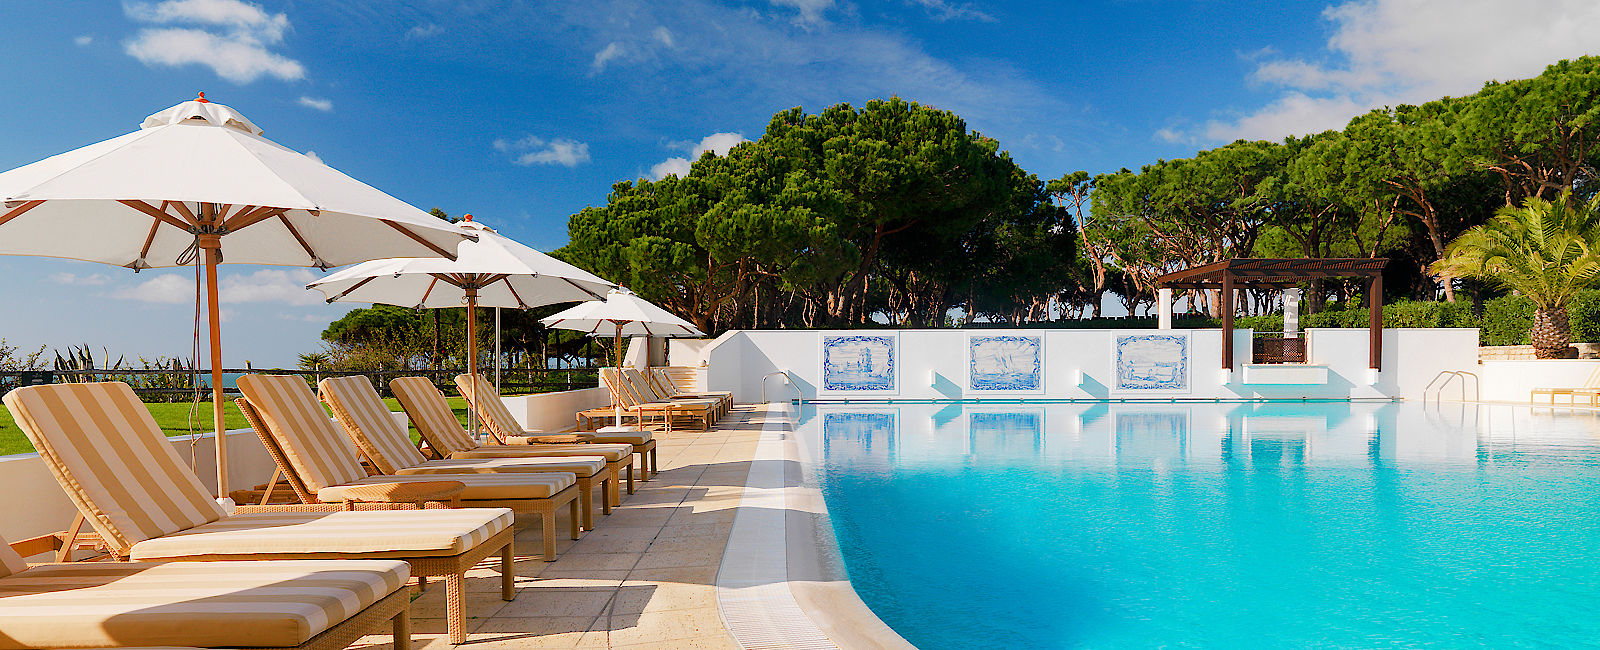 HOTELTEST
 Sheraton Algarve, a Luxury Collection Hotel 
 Pine Cliff´s Resort - für Familien und Prominente 